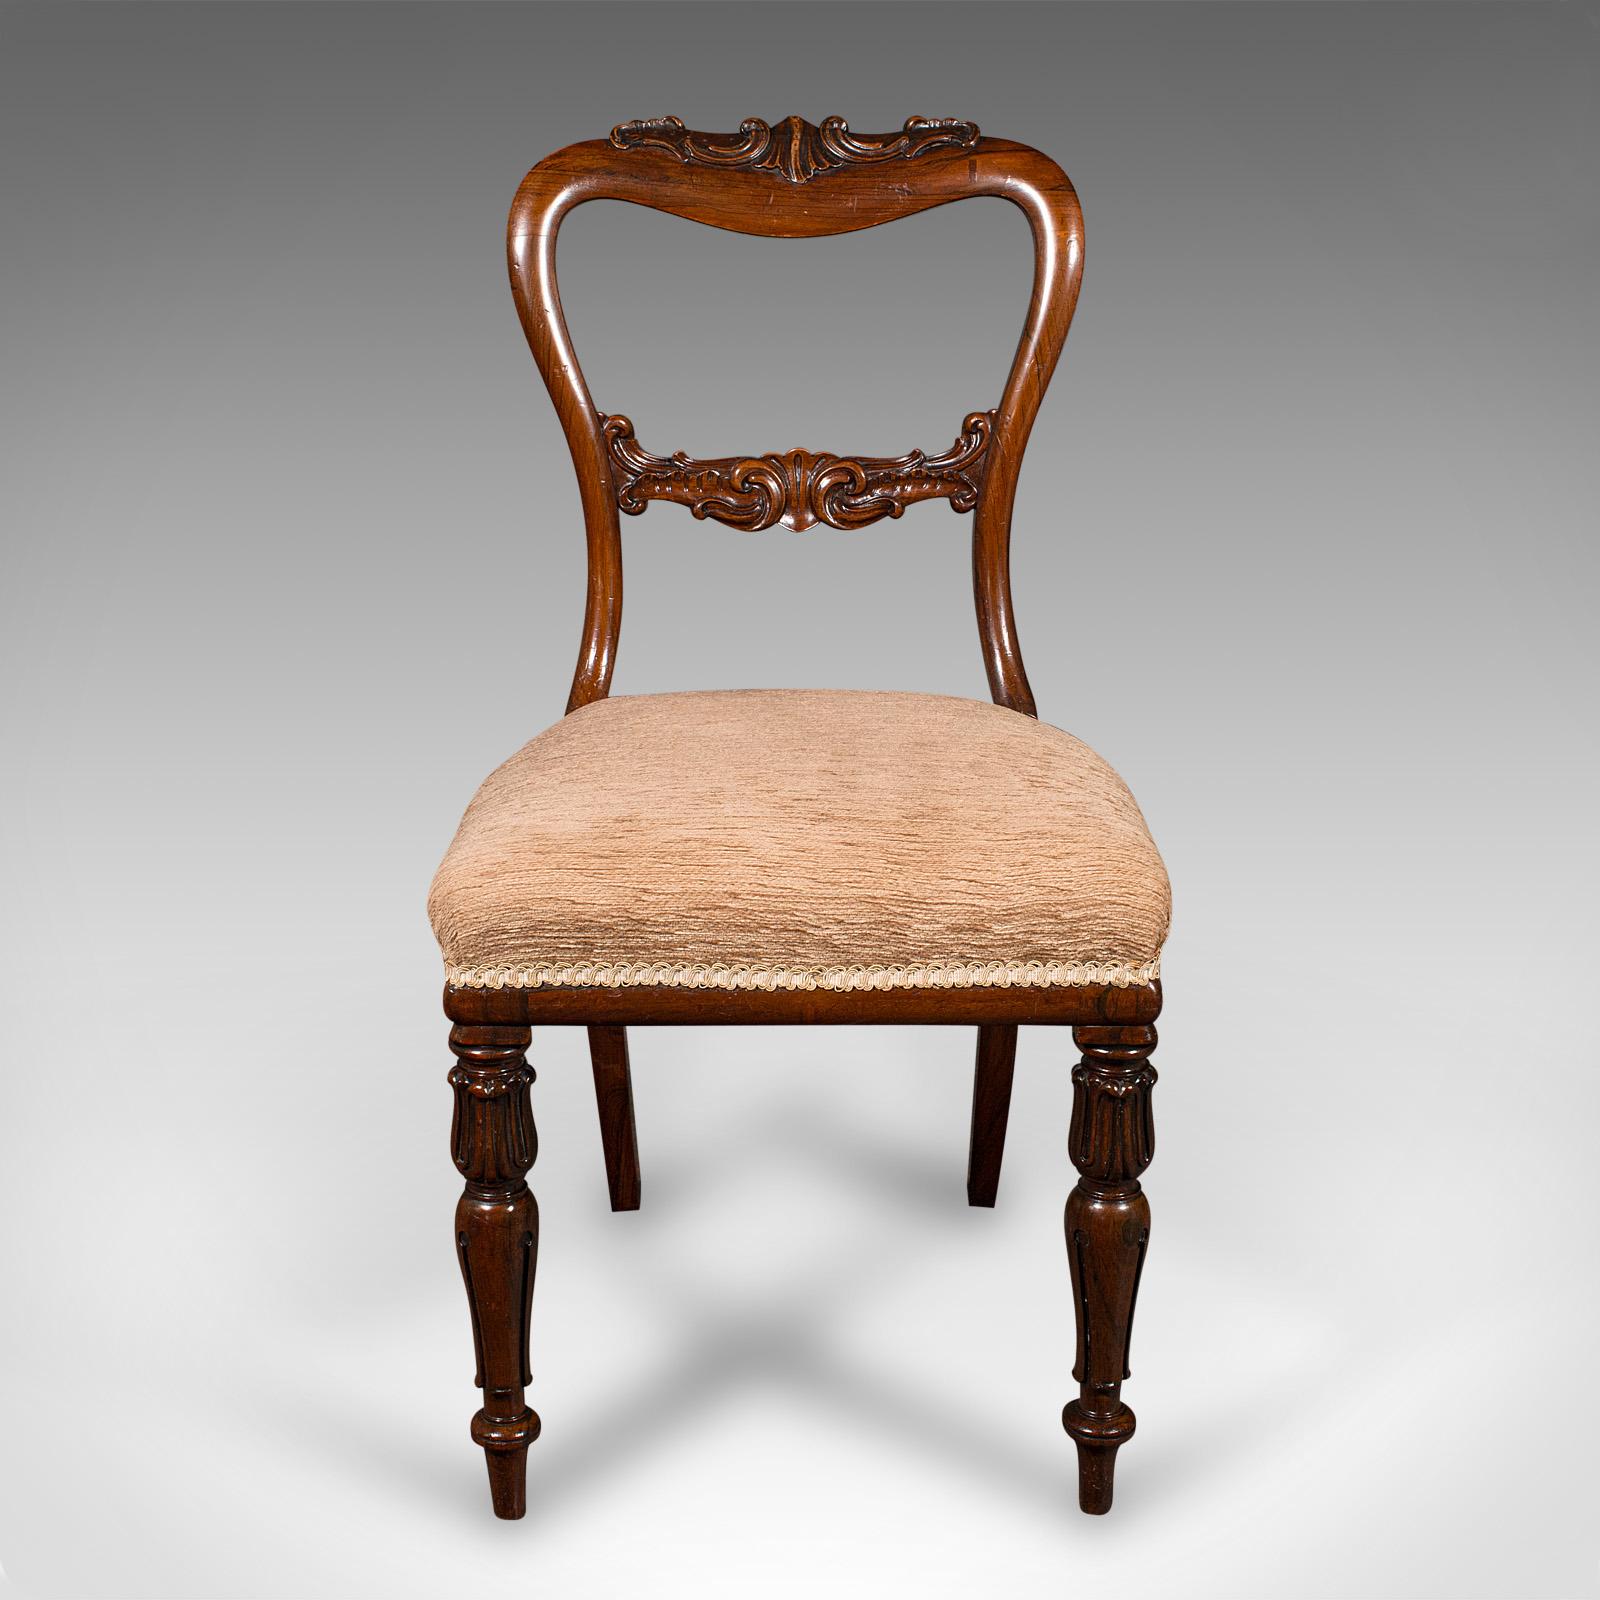 Dies ist ein Satz von 5 antiken Esszimmerstühlen. Eine schottische Rückenlehne aus Palisanderholz, aus der Zeit Wilhelms IV., um 1835.

Angenehm dekorative Esszimmerstühle von hoher Qualität und Handwerkskunst
Mit wünschenswerter Alterspatina und in